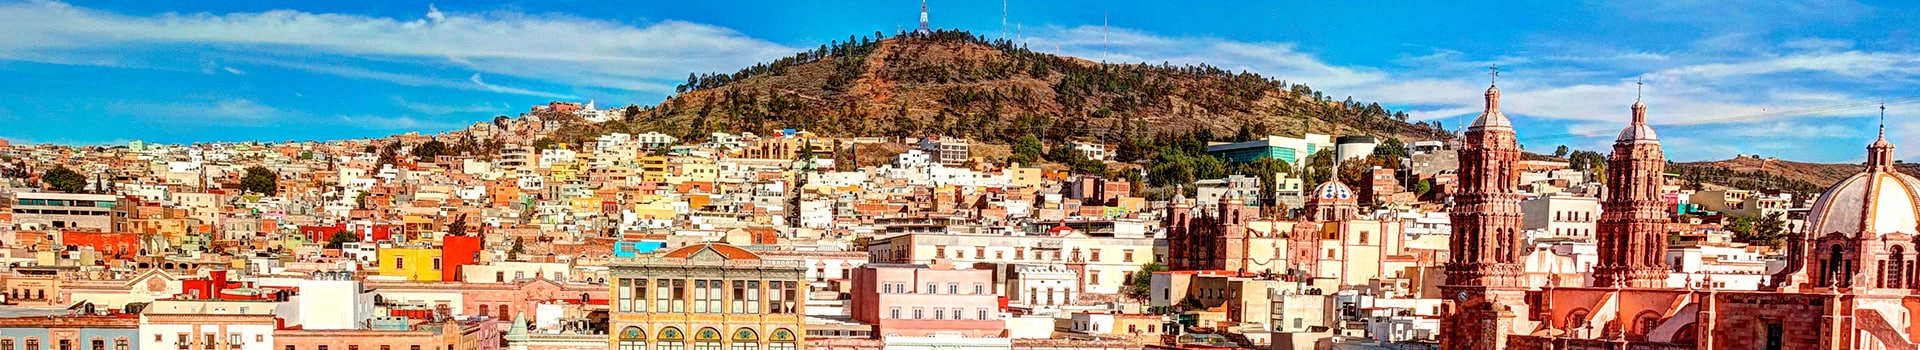 Madrid - Zacatecas